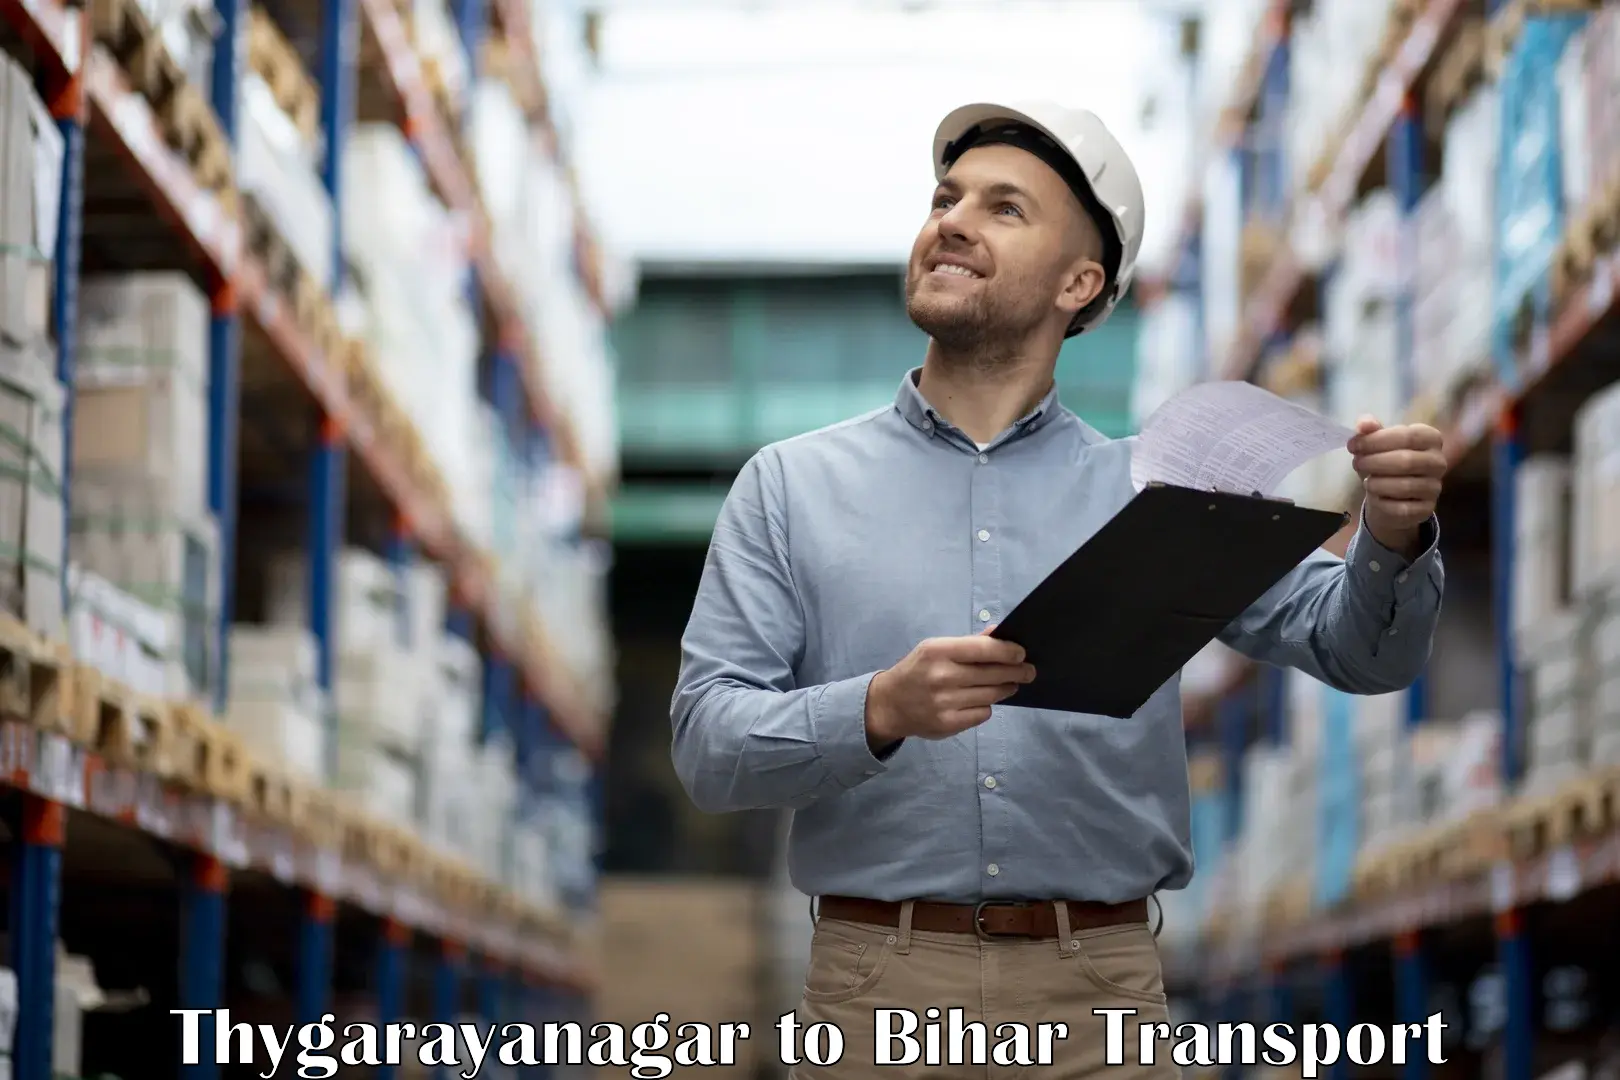 Container transport service Thygarayanagar to Arwal